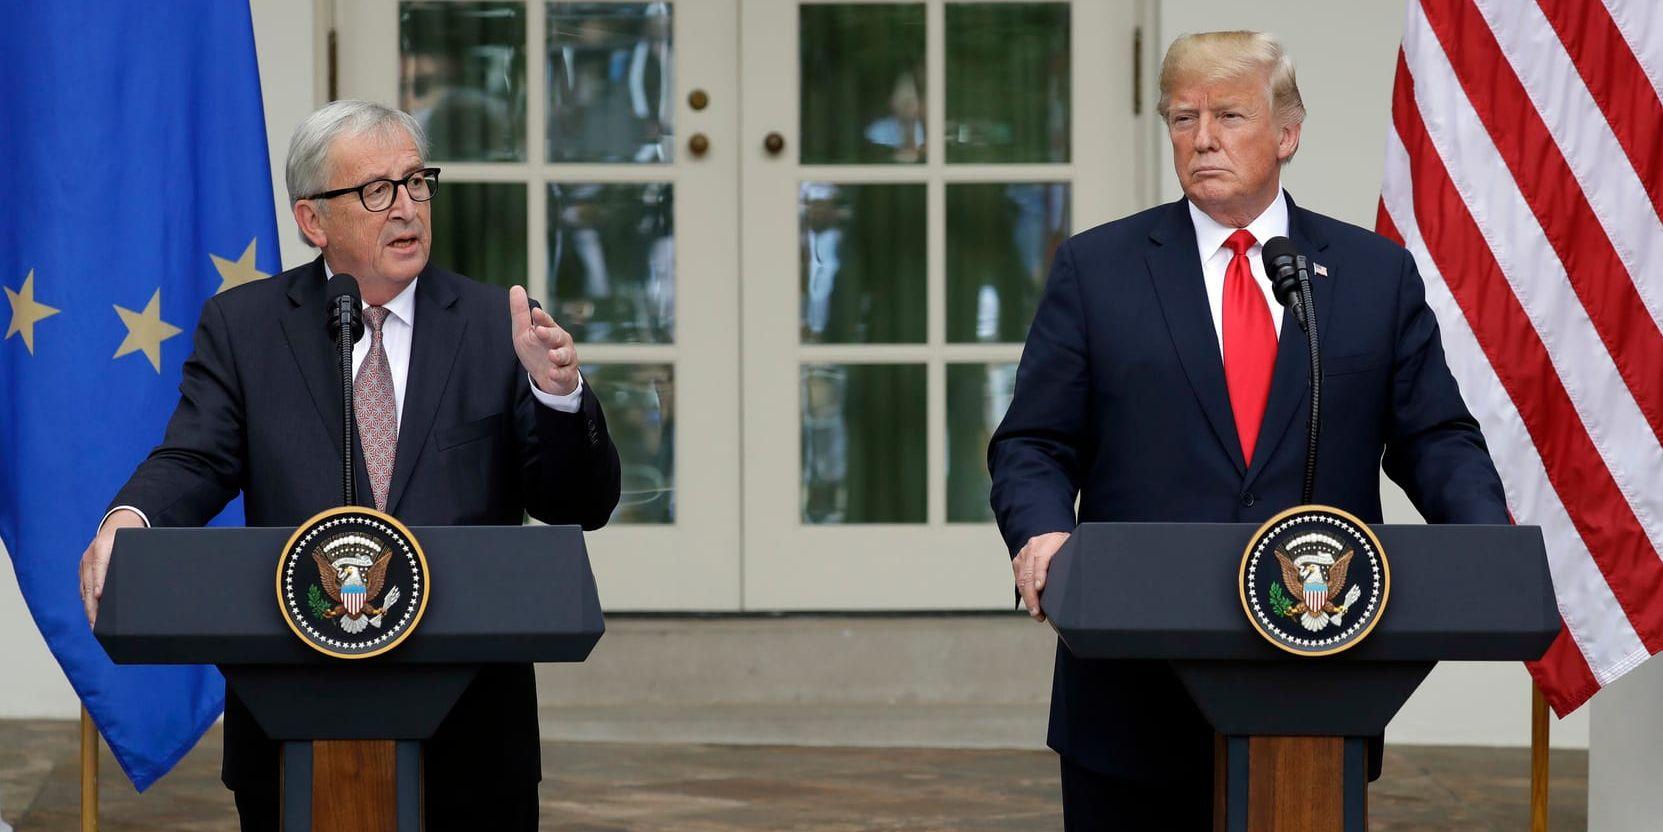 EU-kommissionens ordförande Jean-Claude Juncker och USA:s president Donald Trump talade vid Vita huset i Washington efter mötet.